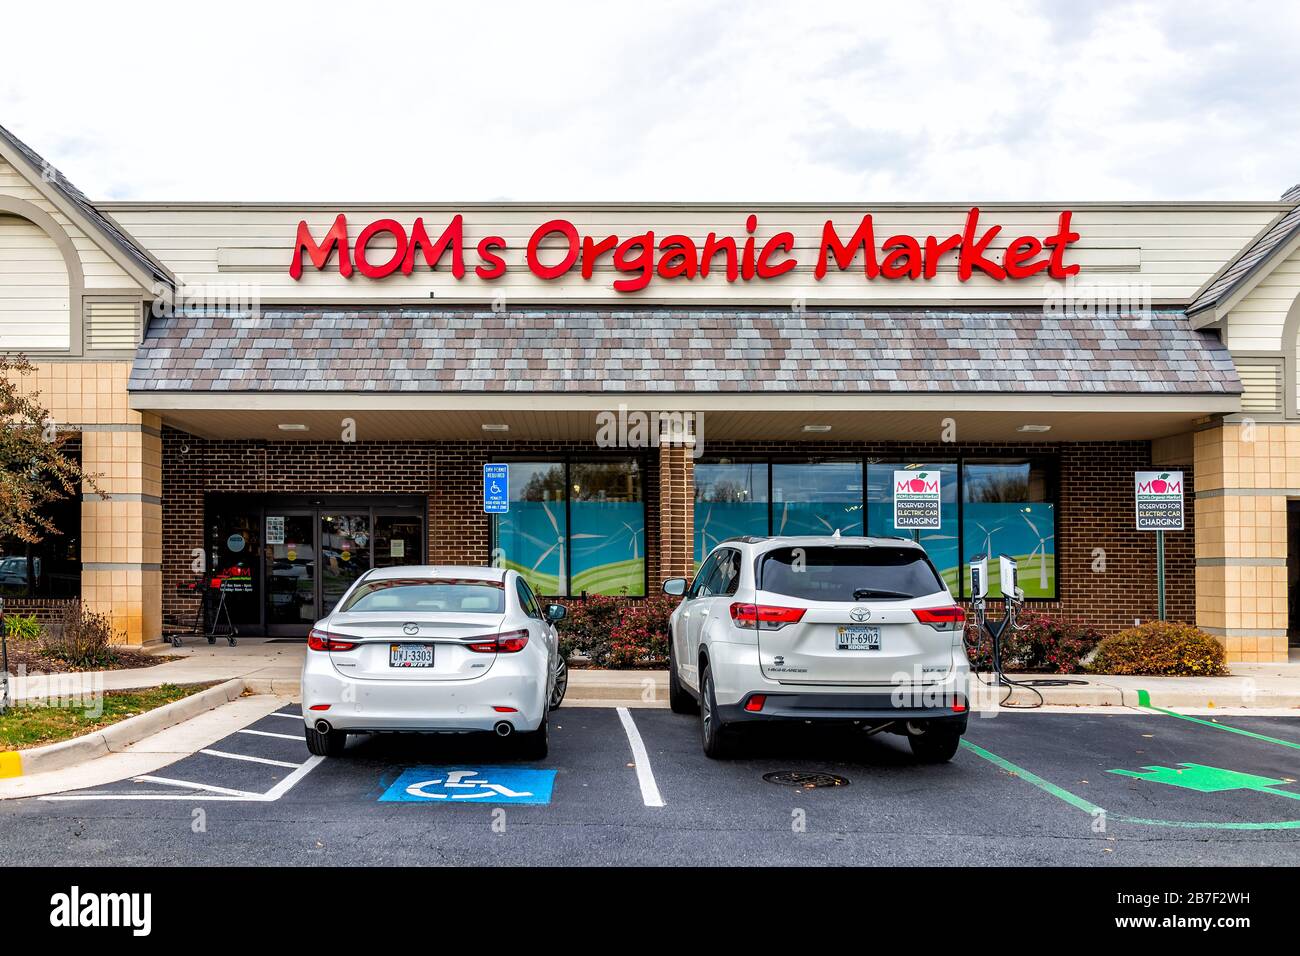 Herndon, EE.UU. - 12 de noviembre de 2019: Fachada exterior de la tienda Mom's Organic Market con productos frescos de granja en la calle en el condado de Virginia Fairfax Foto de stock